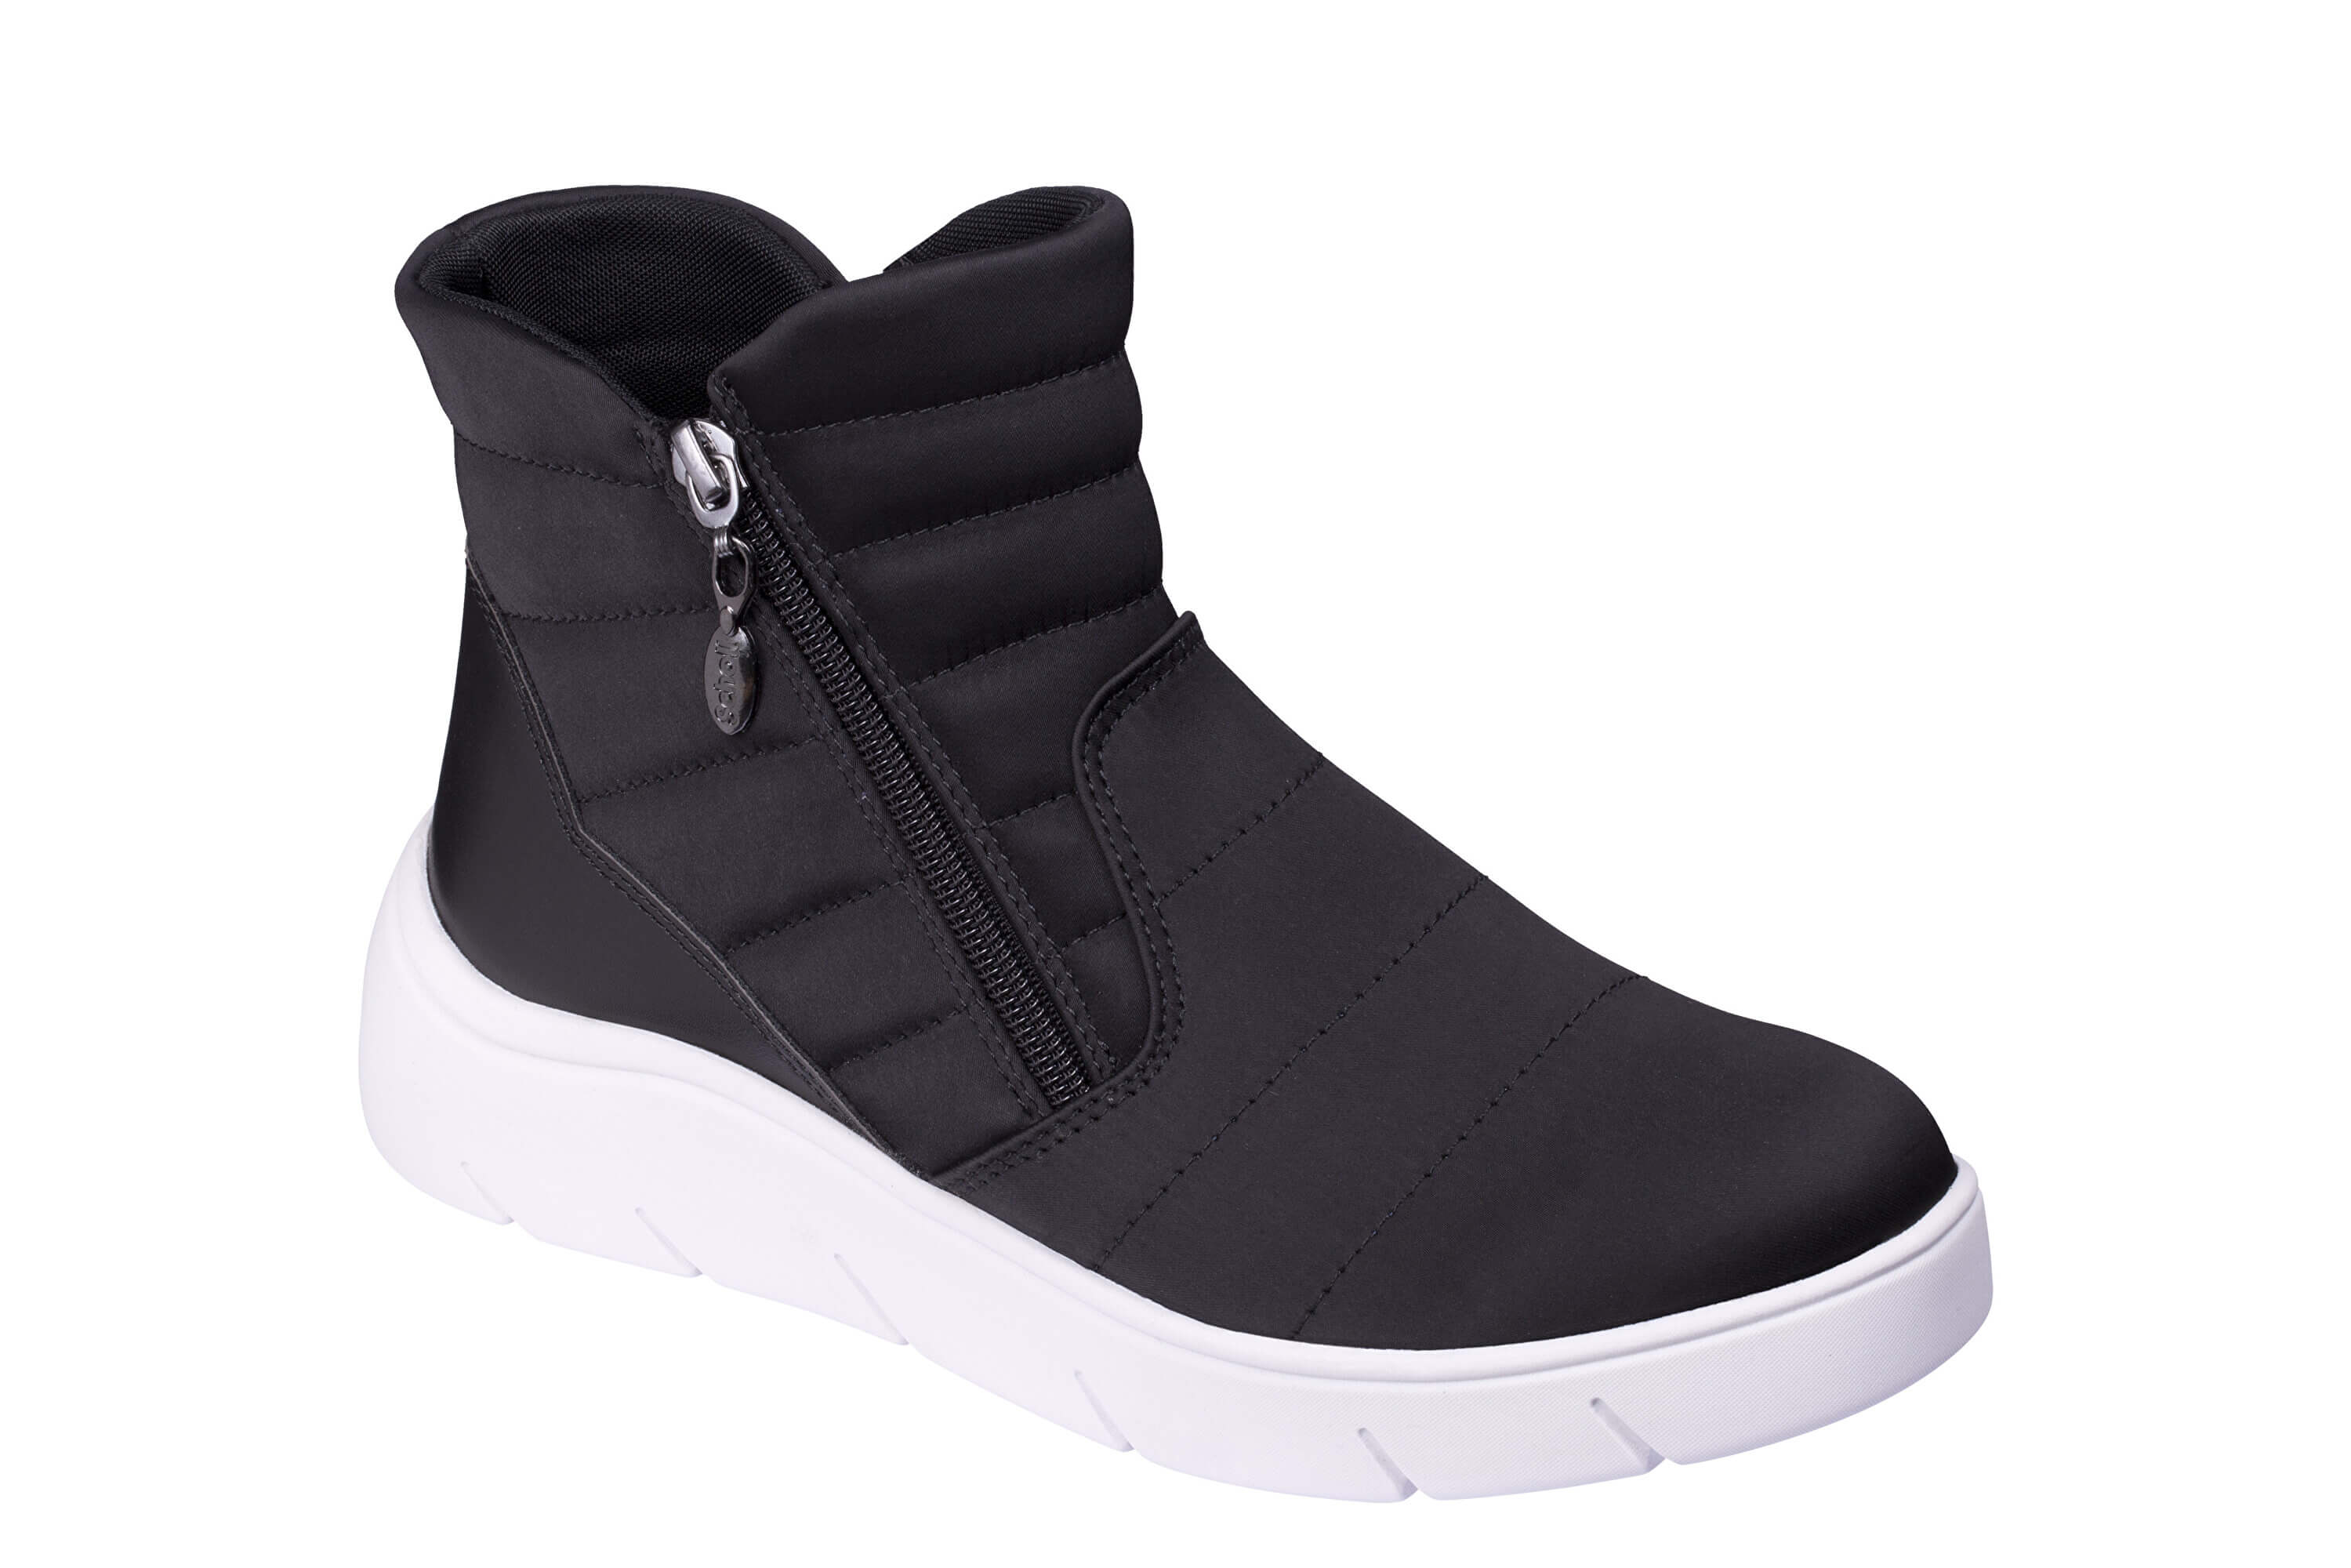 Zobrazit detail výrobku Scholl Zdravotní obuv - APRICA Black 41 + 2 měsíce na vrácení zboží